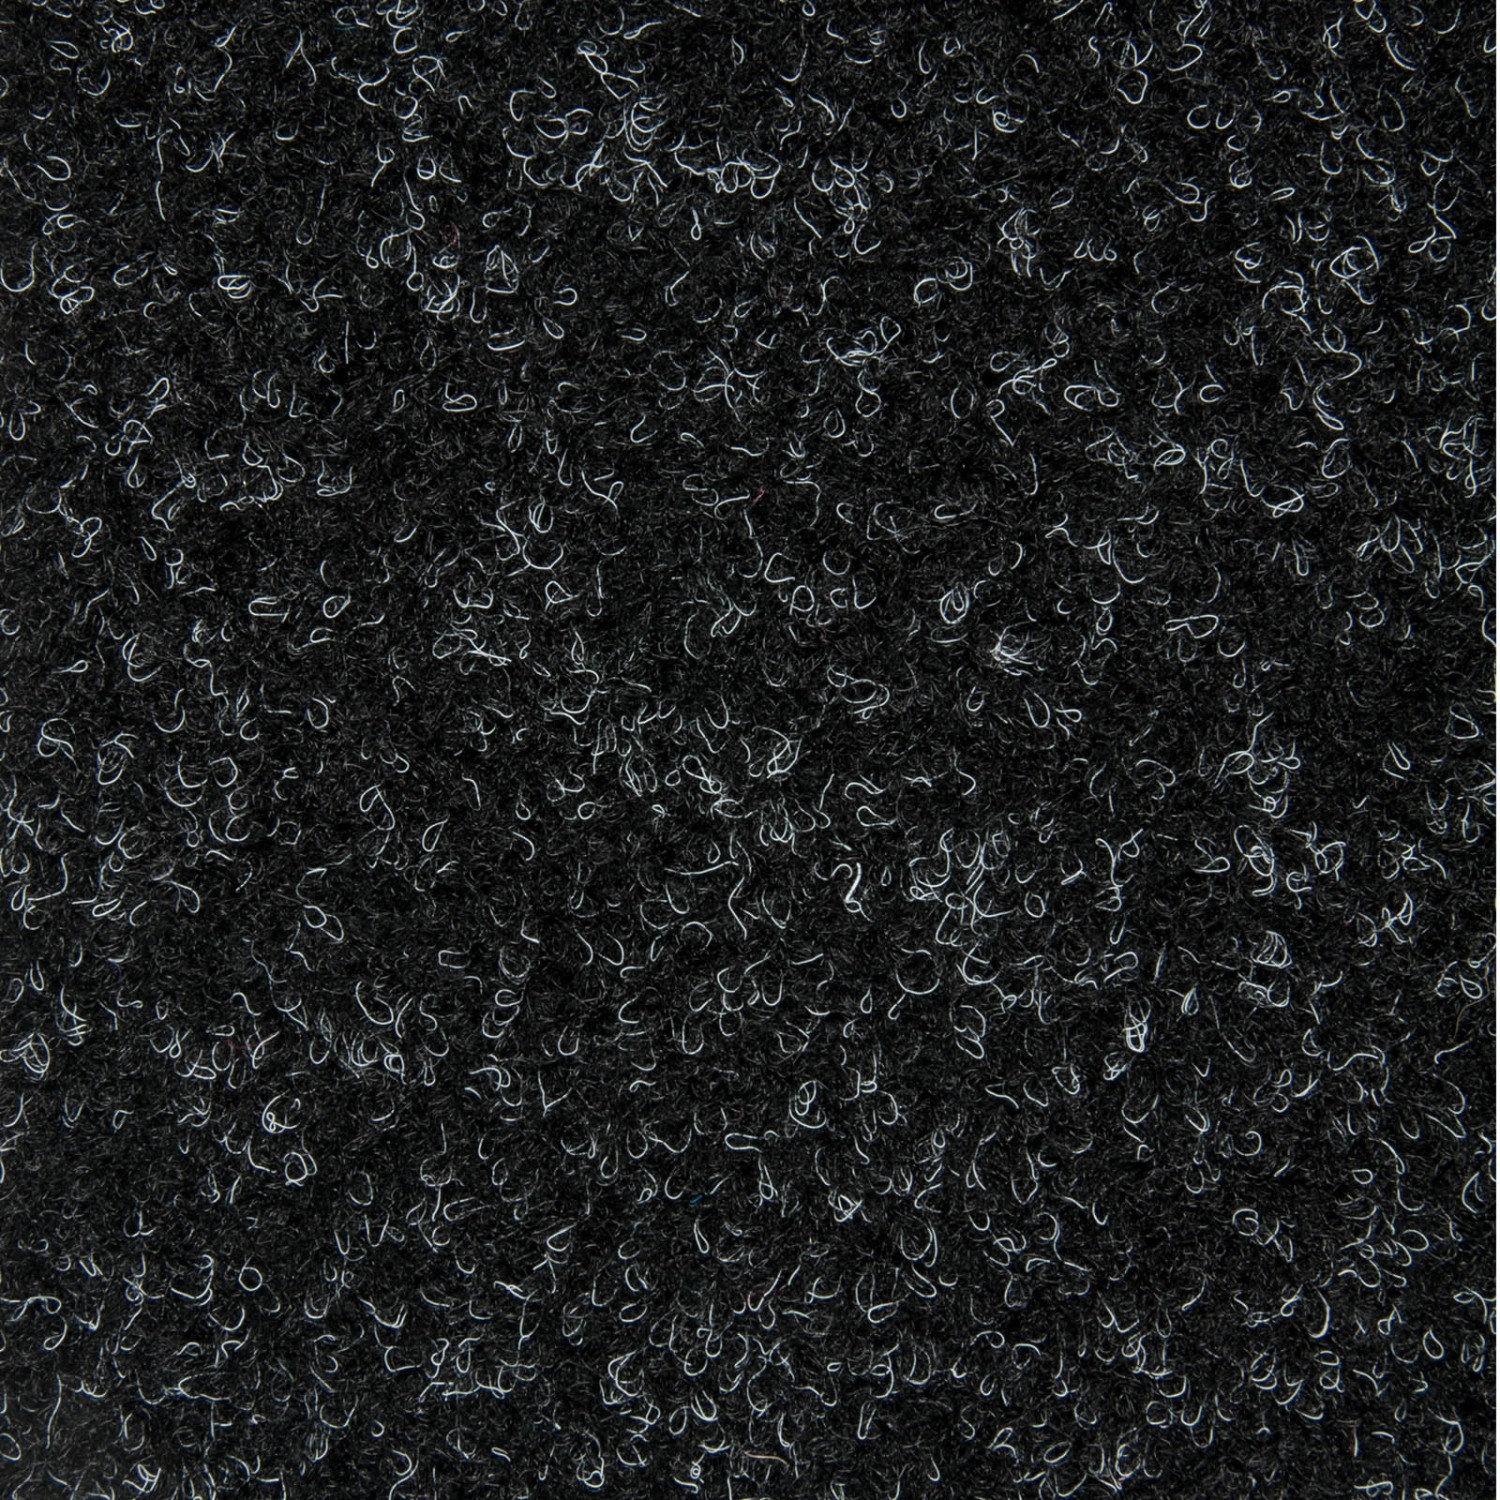 Schatex Nadelfilz Teppichfliesen Für Messe Und Büro Teppich Fliesen Selbstliegend In Schwarz Ideal Als Messeteppich Scha